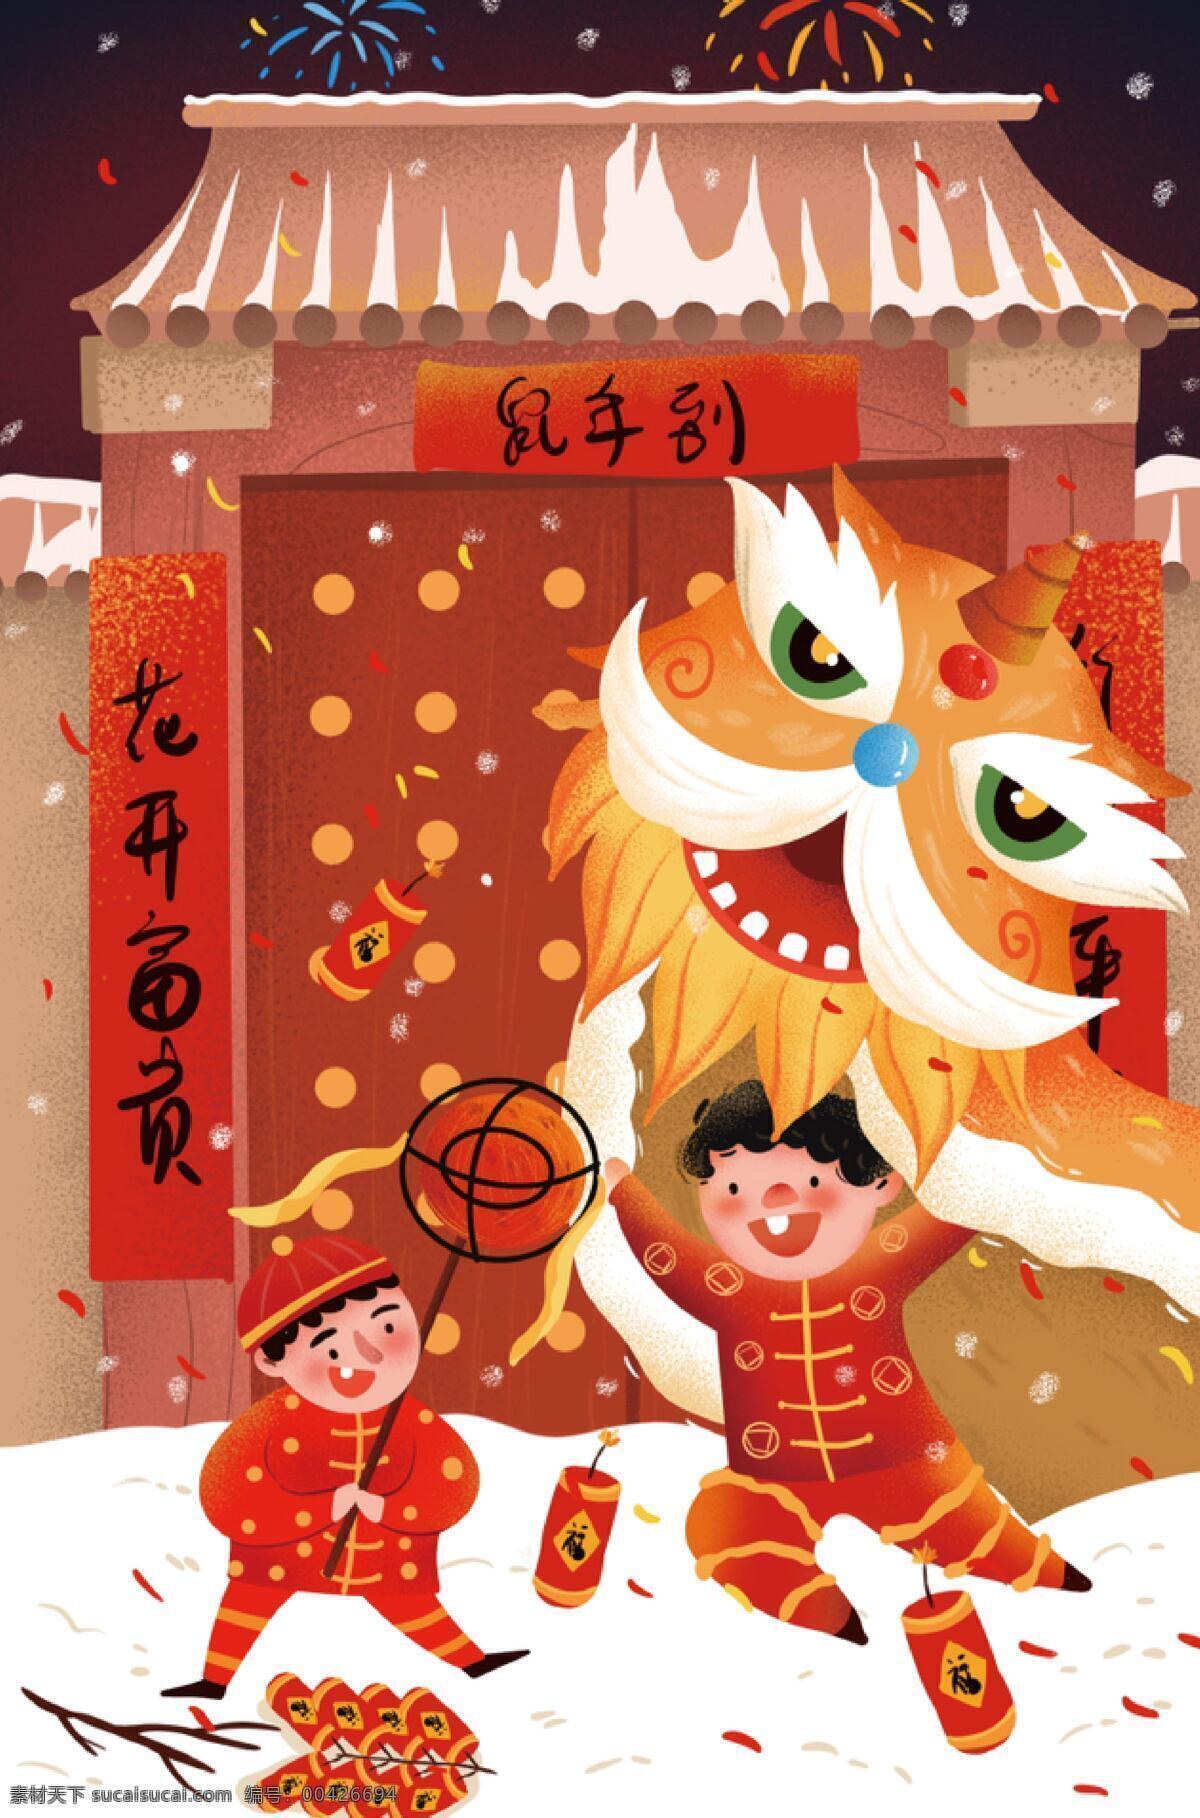 门前舞狮 舞狮 吉祥 祝福 春节 红色 插画 文化艺术 节日庆祝